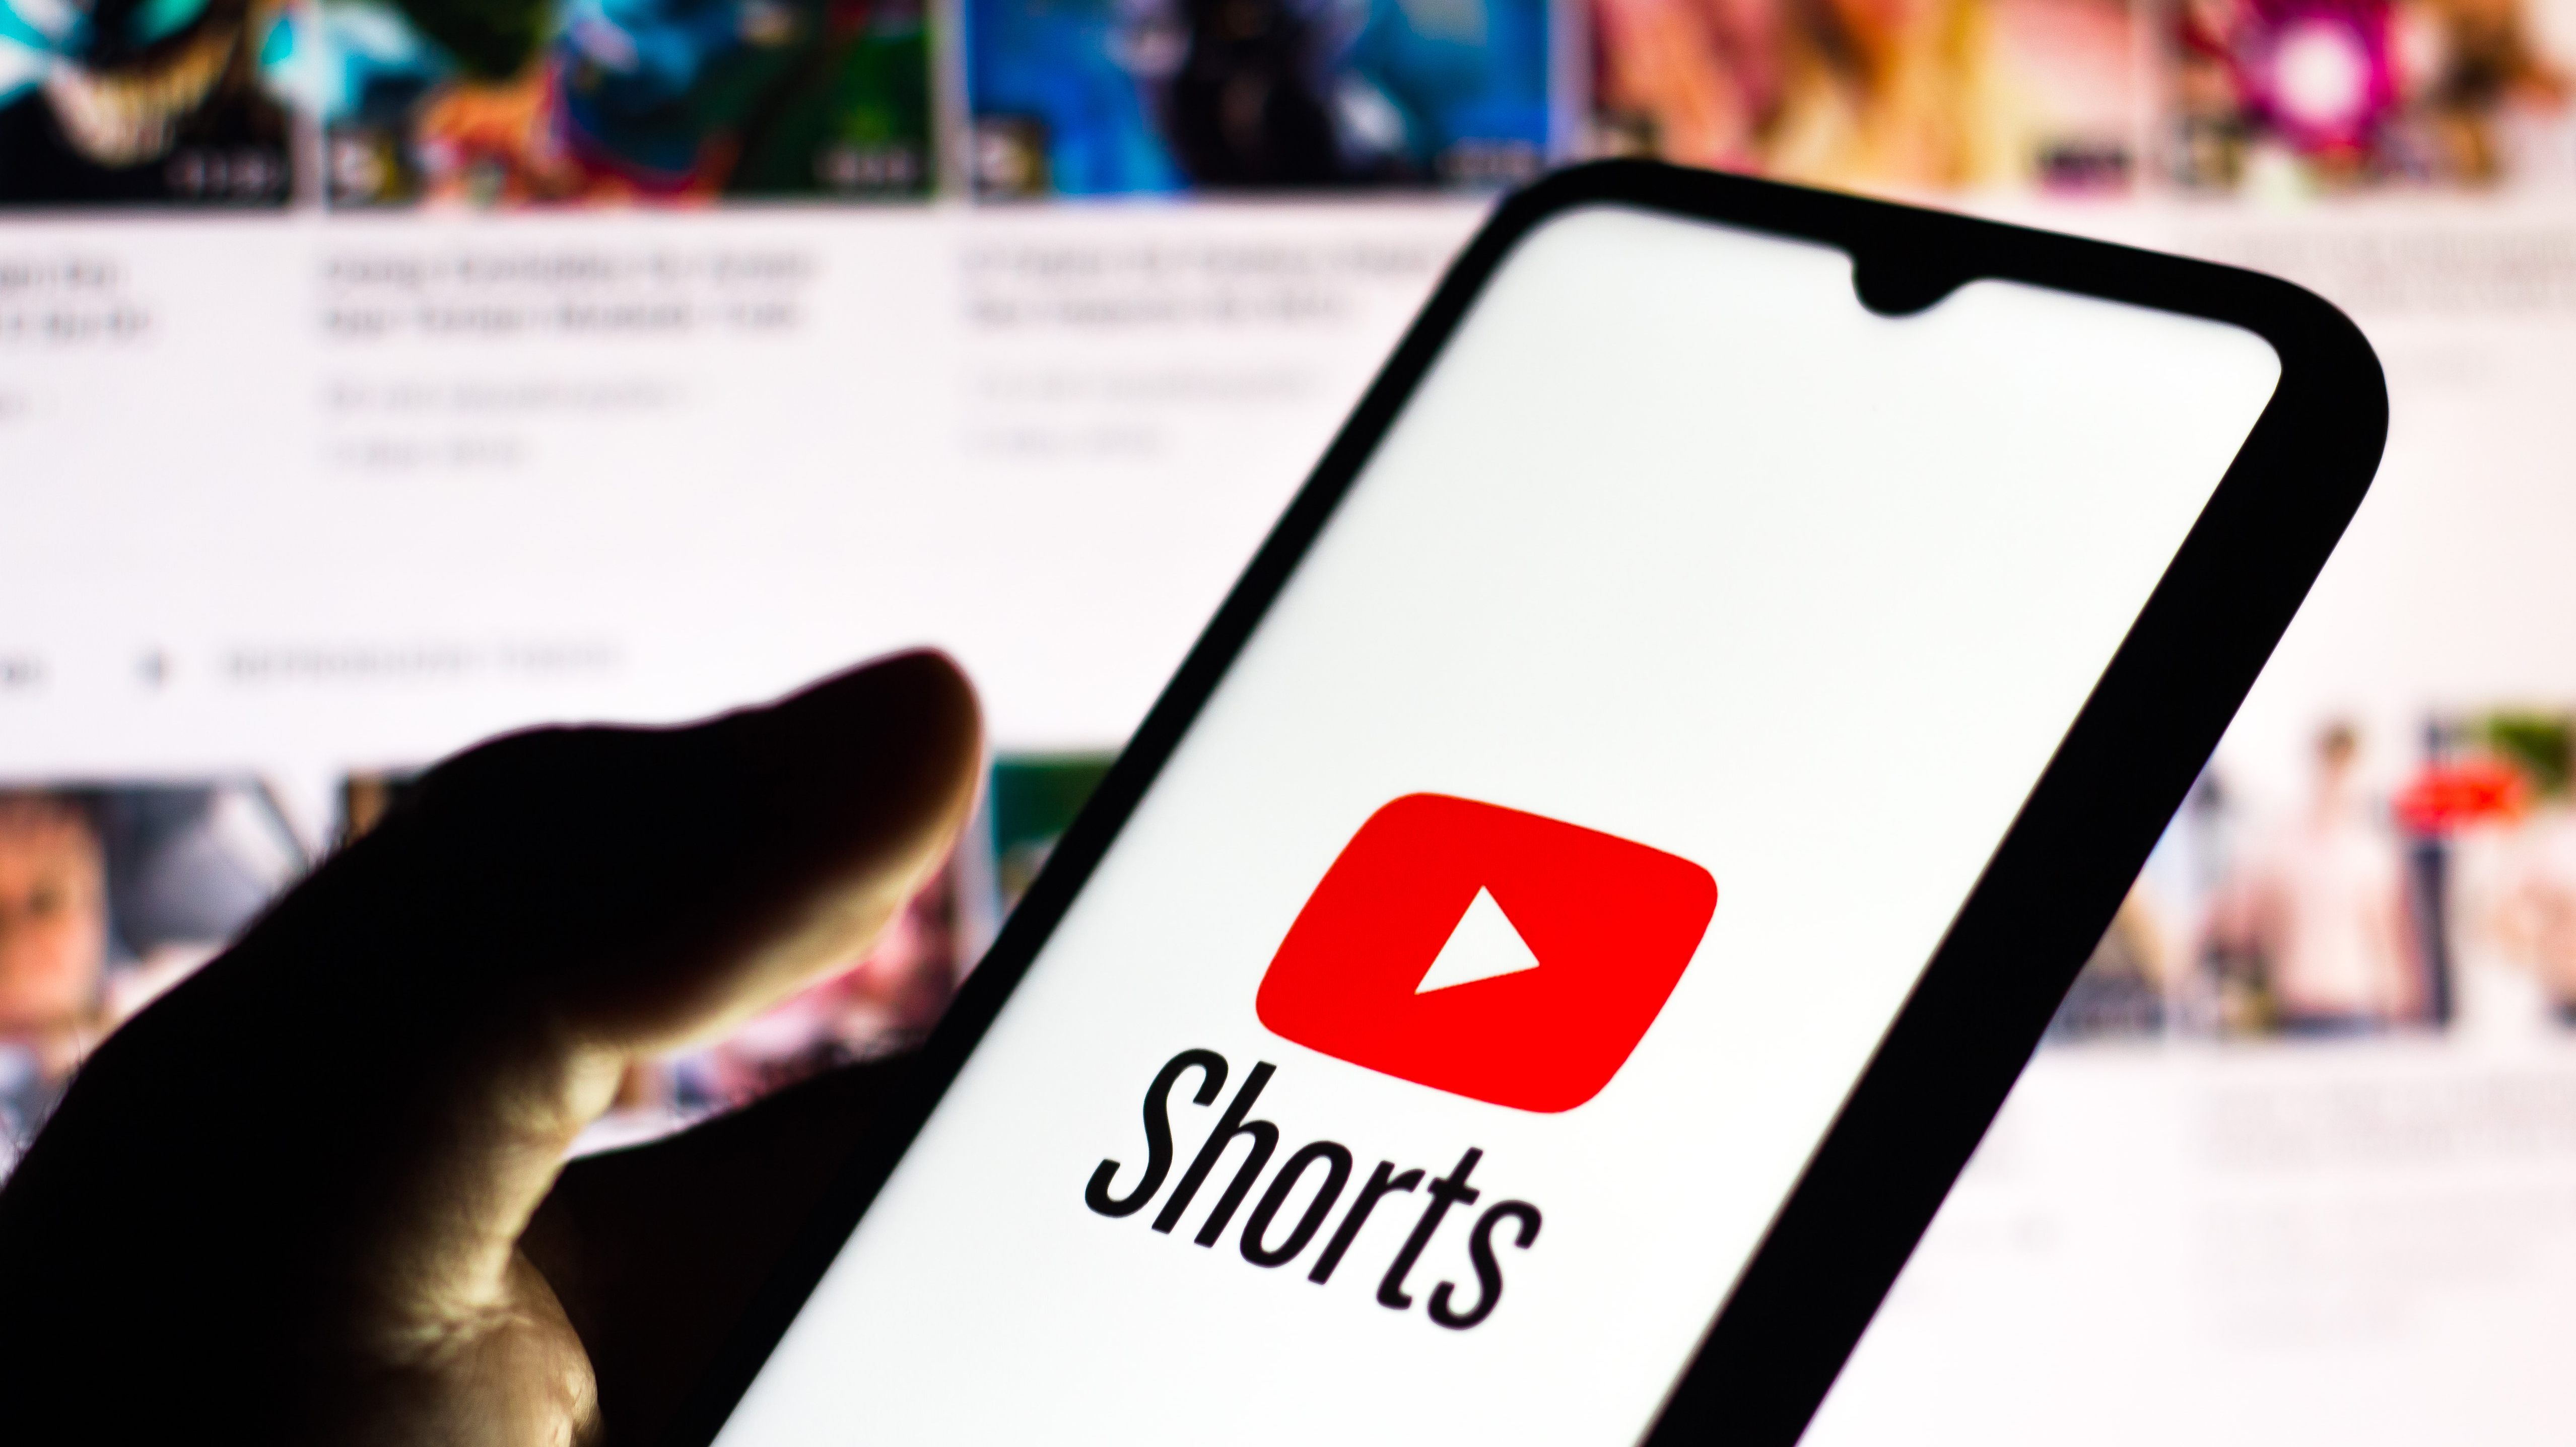 Shorts: Kurzvideos drohen das Kerngeschäft von YouTube zu kannibalisieren |  heise online